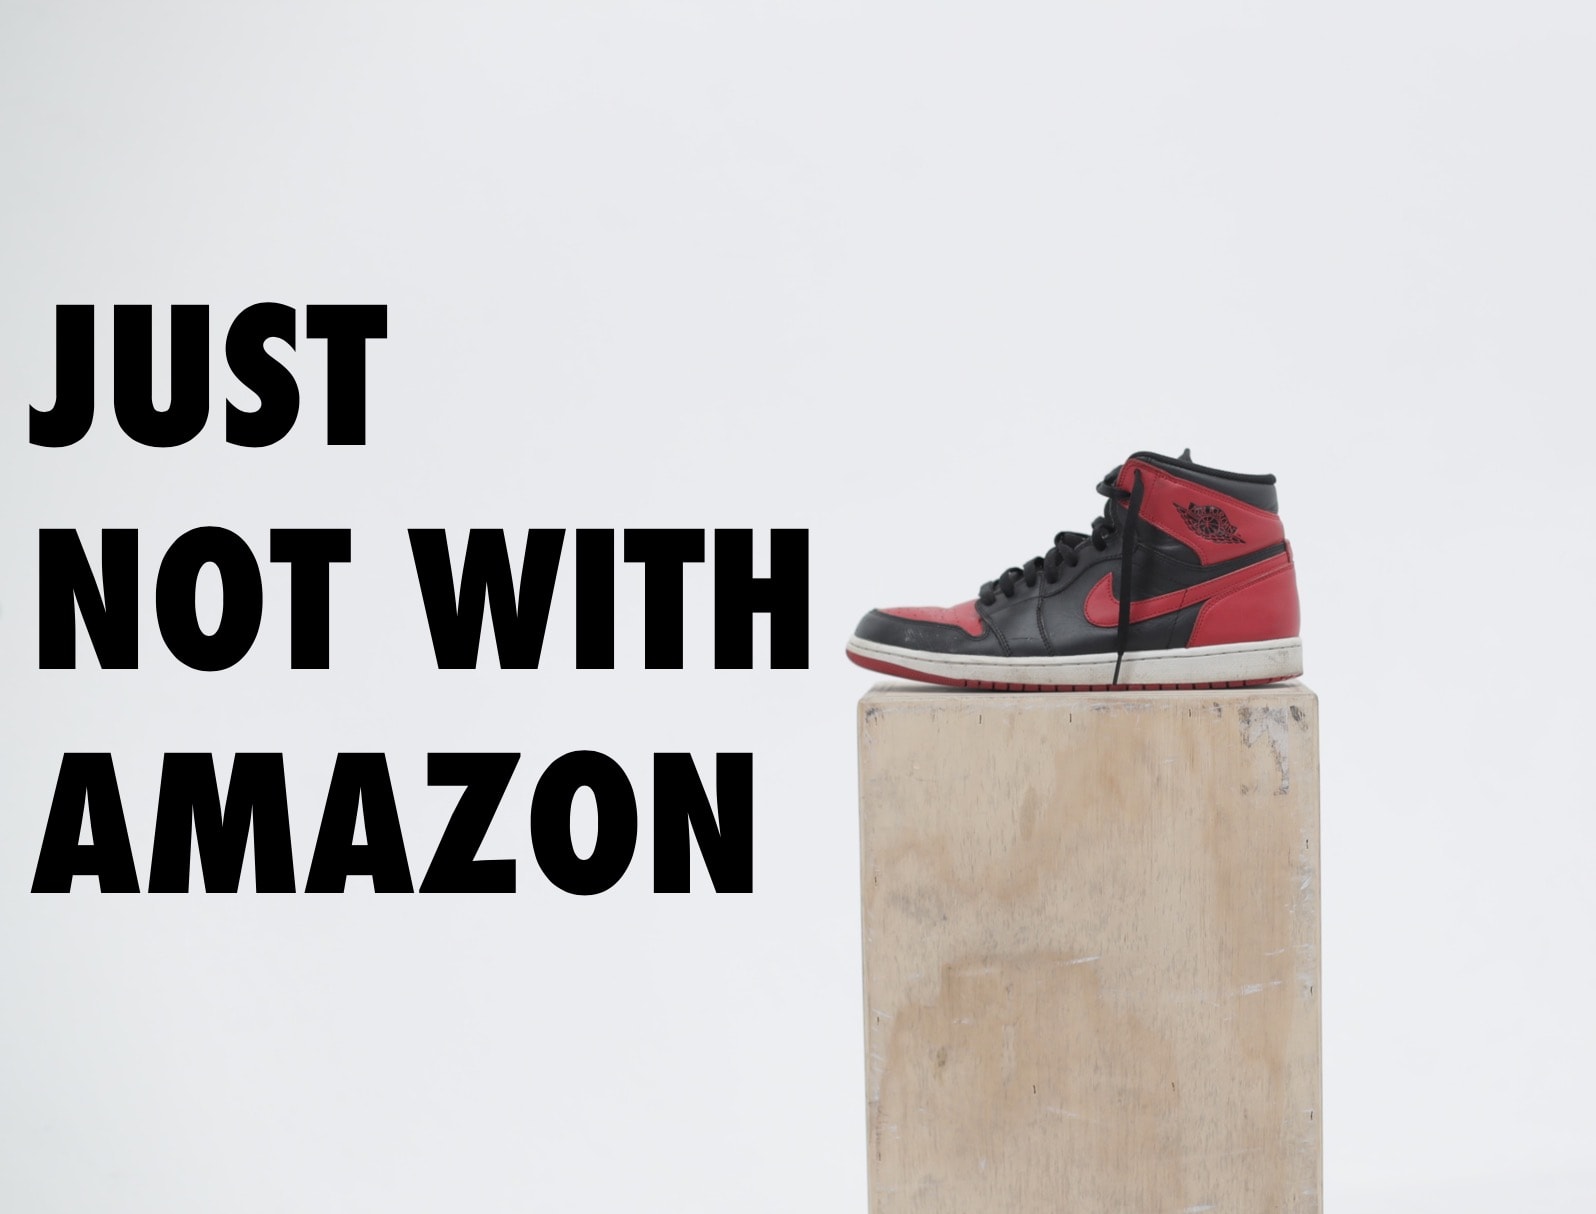 Nhìn lại vị của Amazon sau cuộc chia tay với Nike